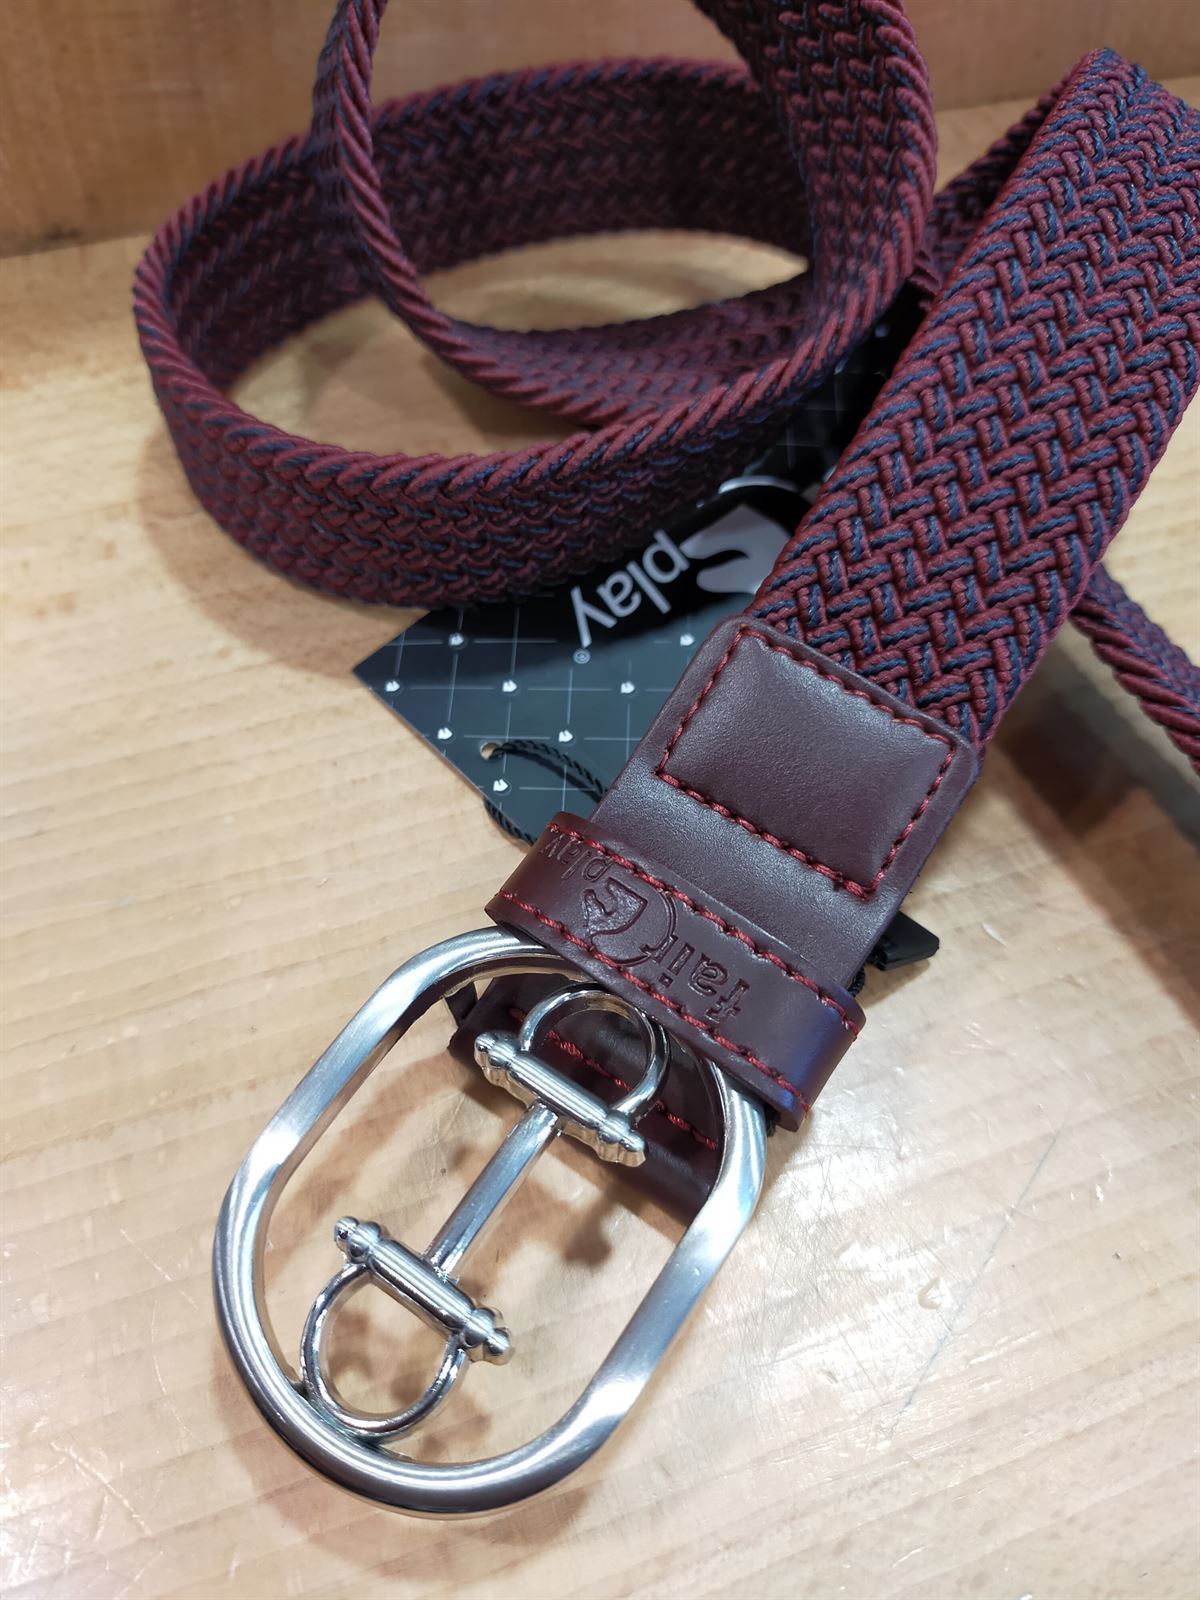 Cinturón elástico FAIR PLAY Valley color burdeos/marino talla S/M - Imagen 1